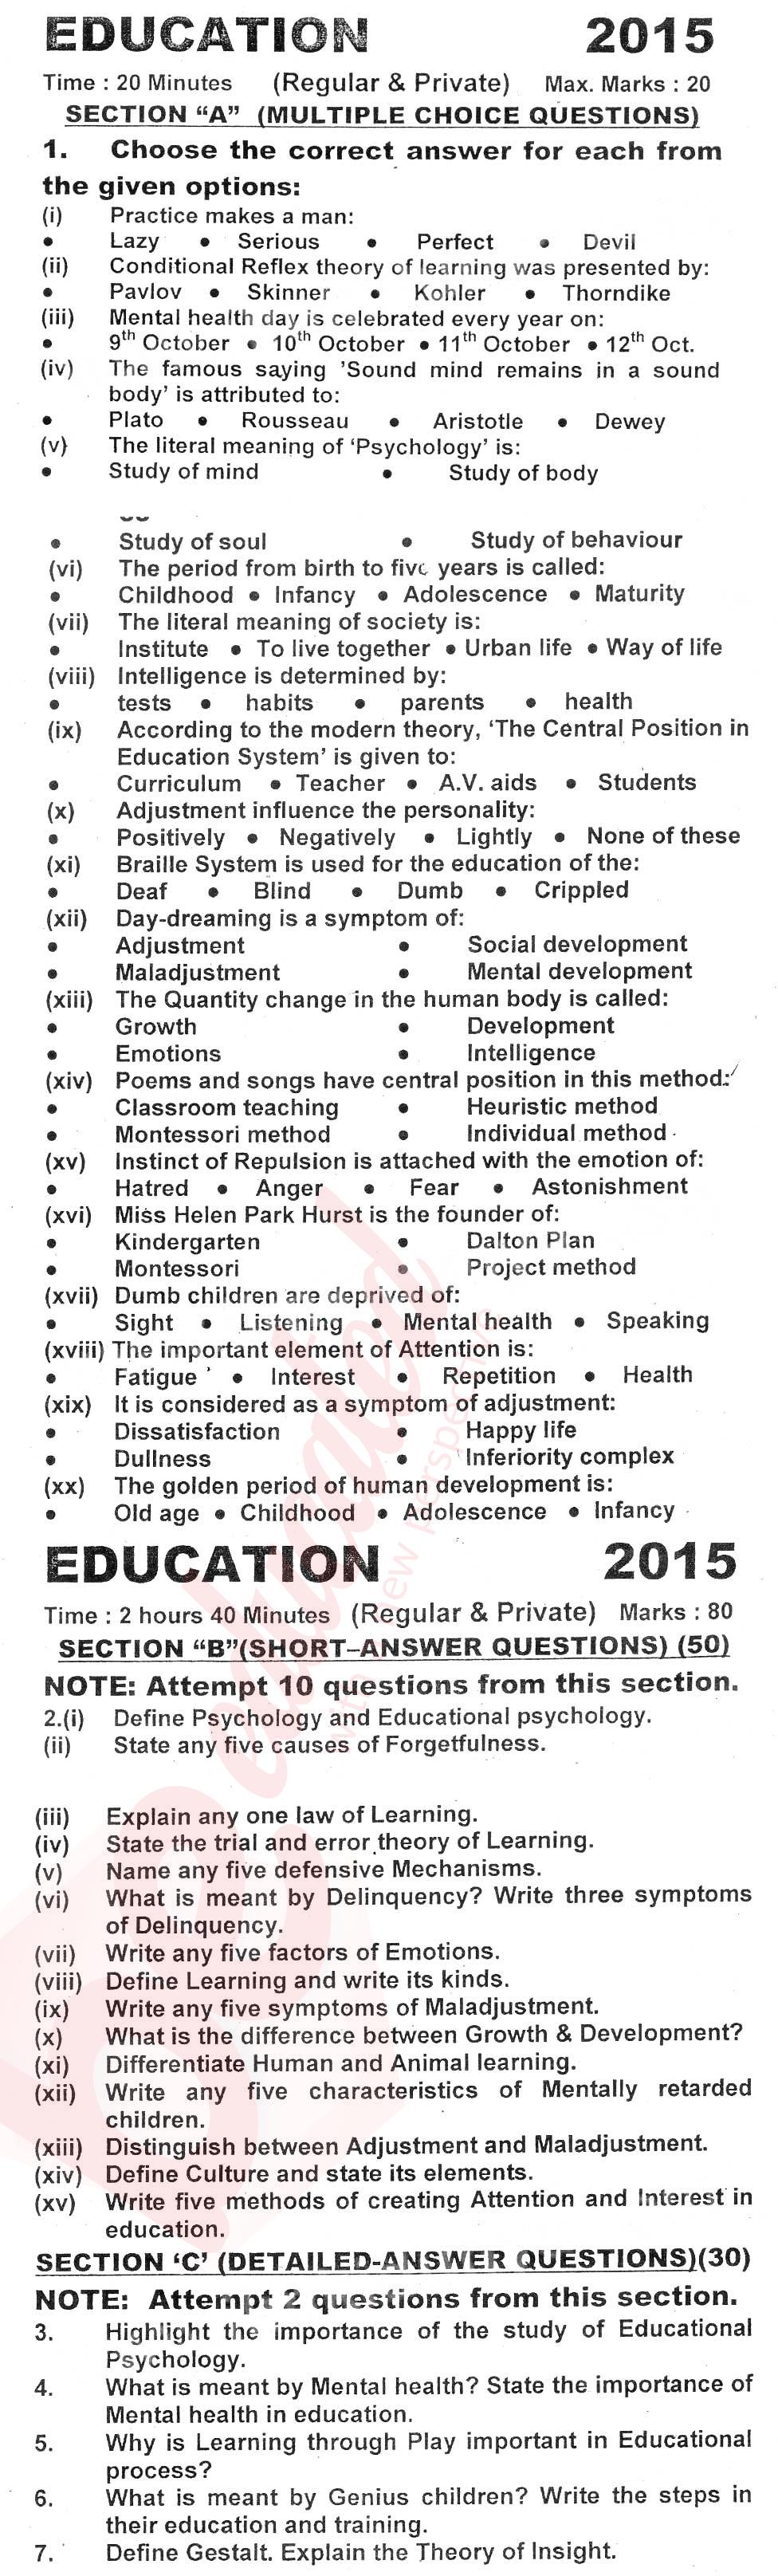 Education FA Part 1 Past Paper Group 1 KPBTE 2015